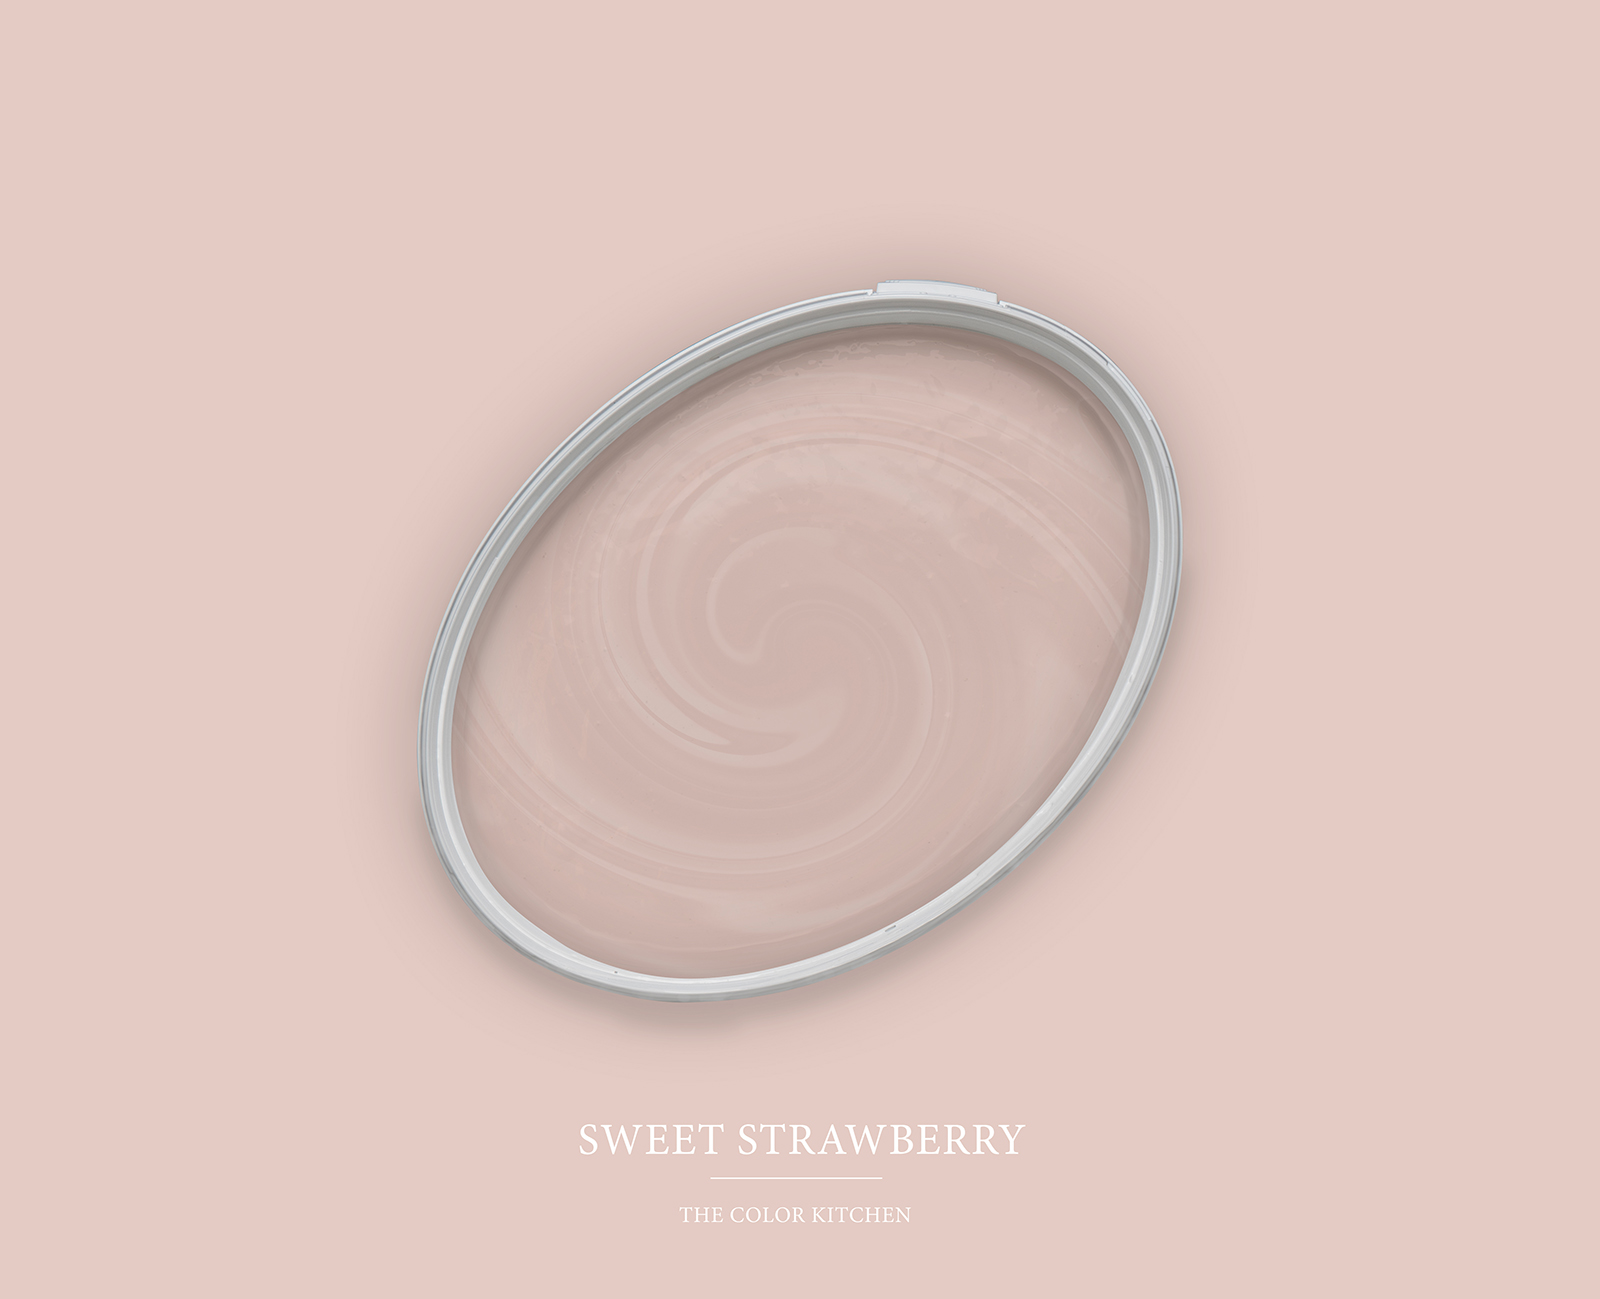 Pittura murale TCK7007 »Sweet Strawberry» un gioco di rosa e beige – 5,0 litri
